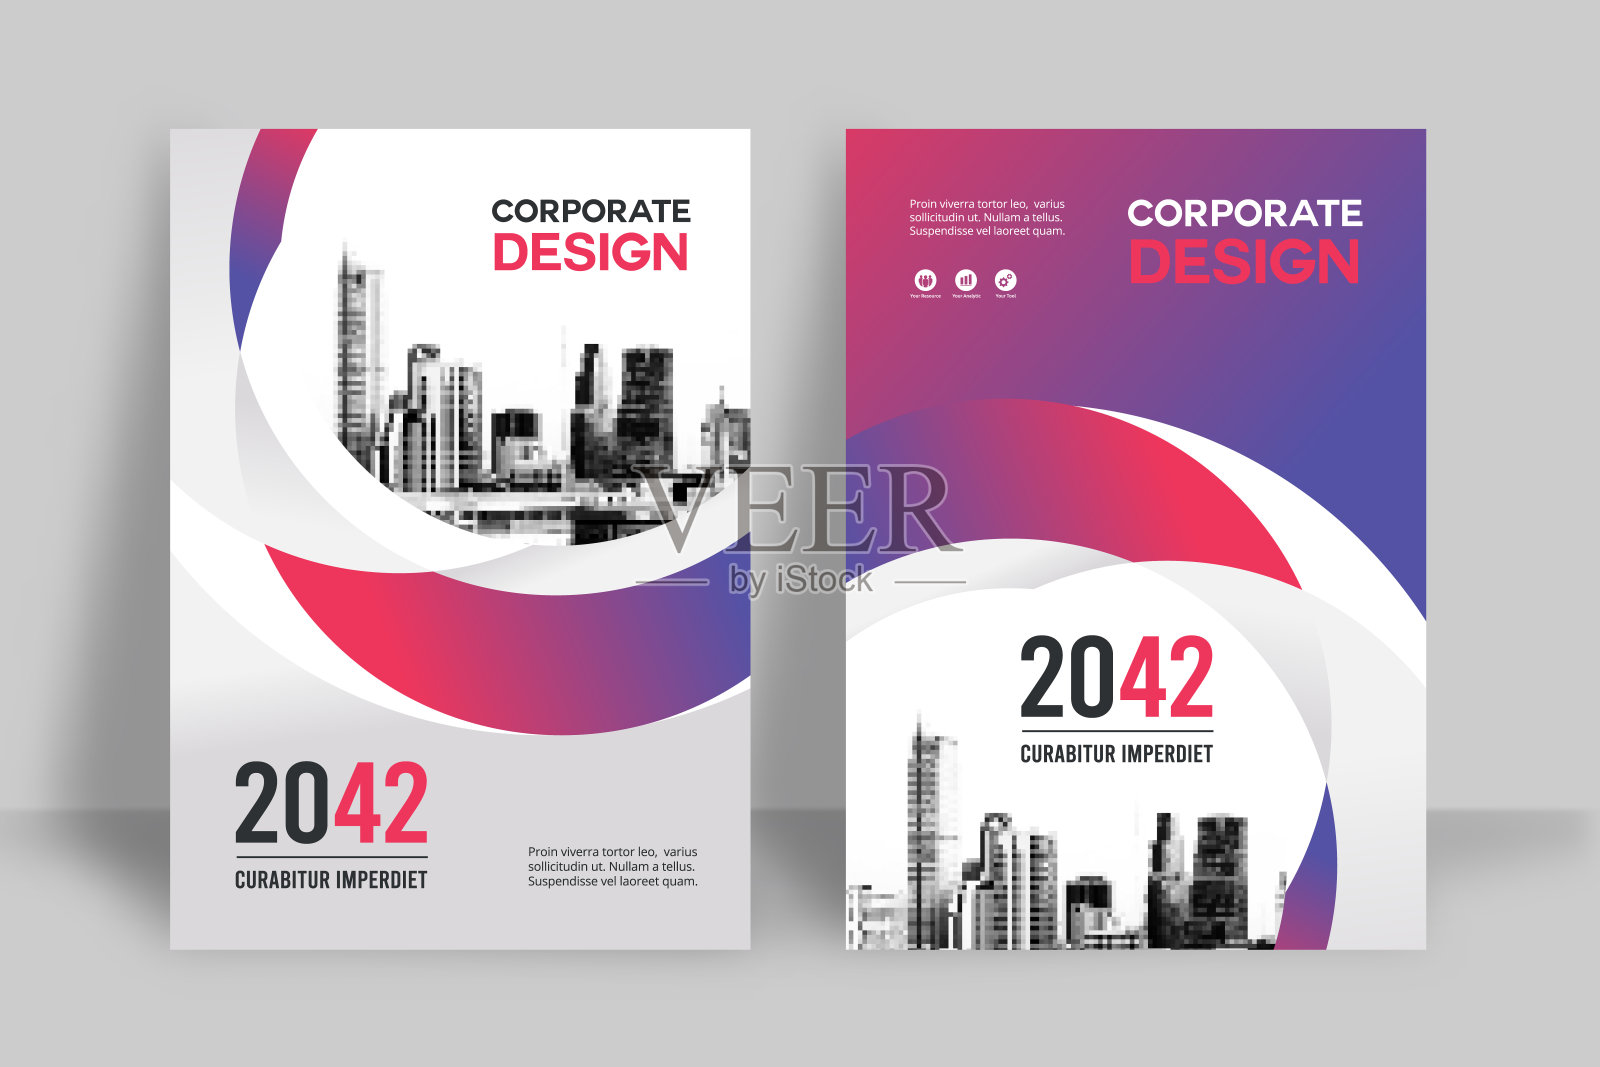 企业书籍封面设计模板A4。设计模板素材